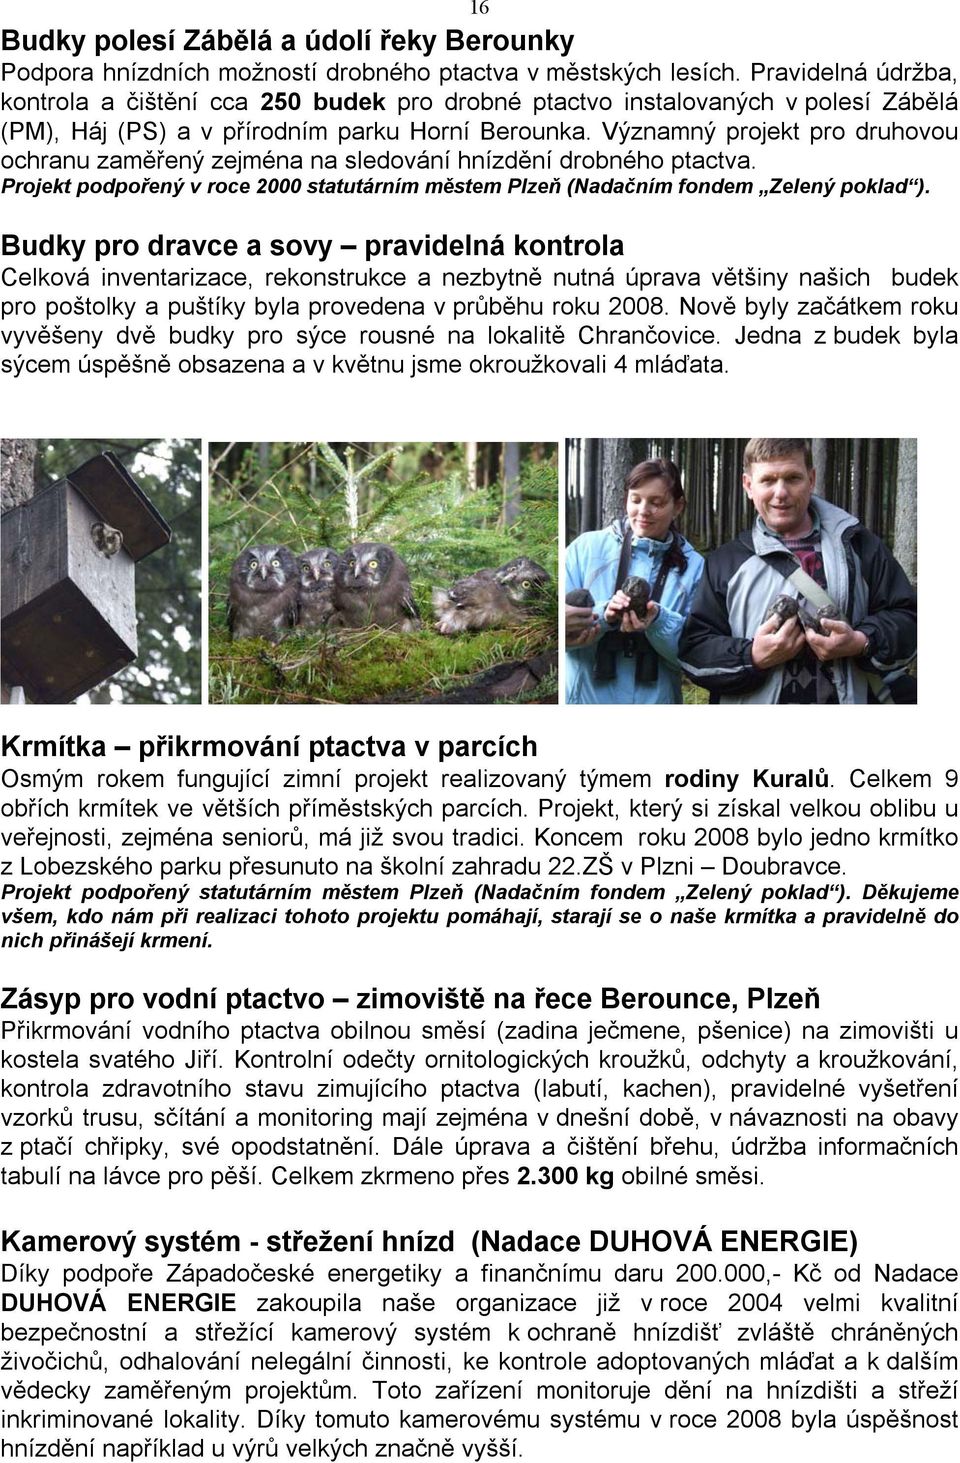 Významný projekt pro druhovou ochranu zaměřený zejména na sledování hnízdění drobného ptactva. Projekt podpořený v roce 2000 statutárním městem Plzeň (Nadačním fondem Zelený poklad ).